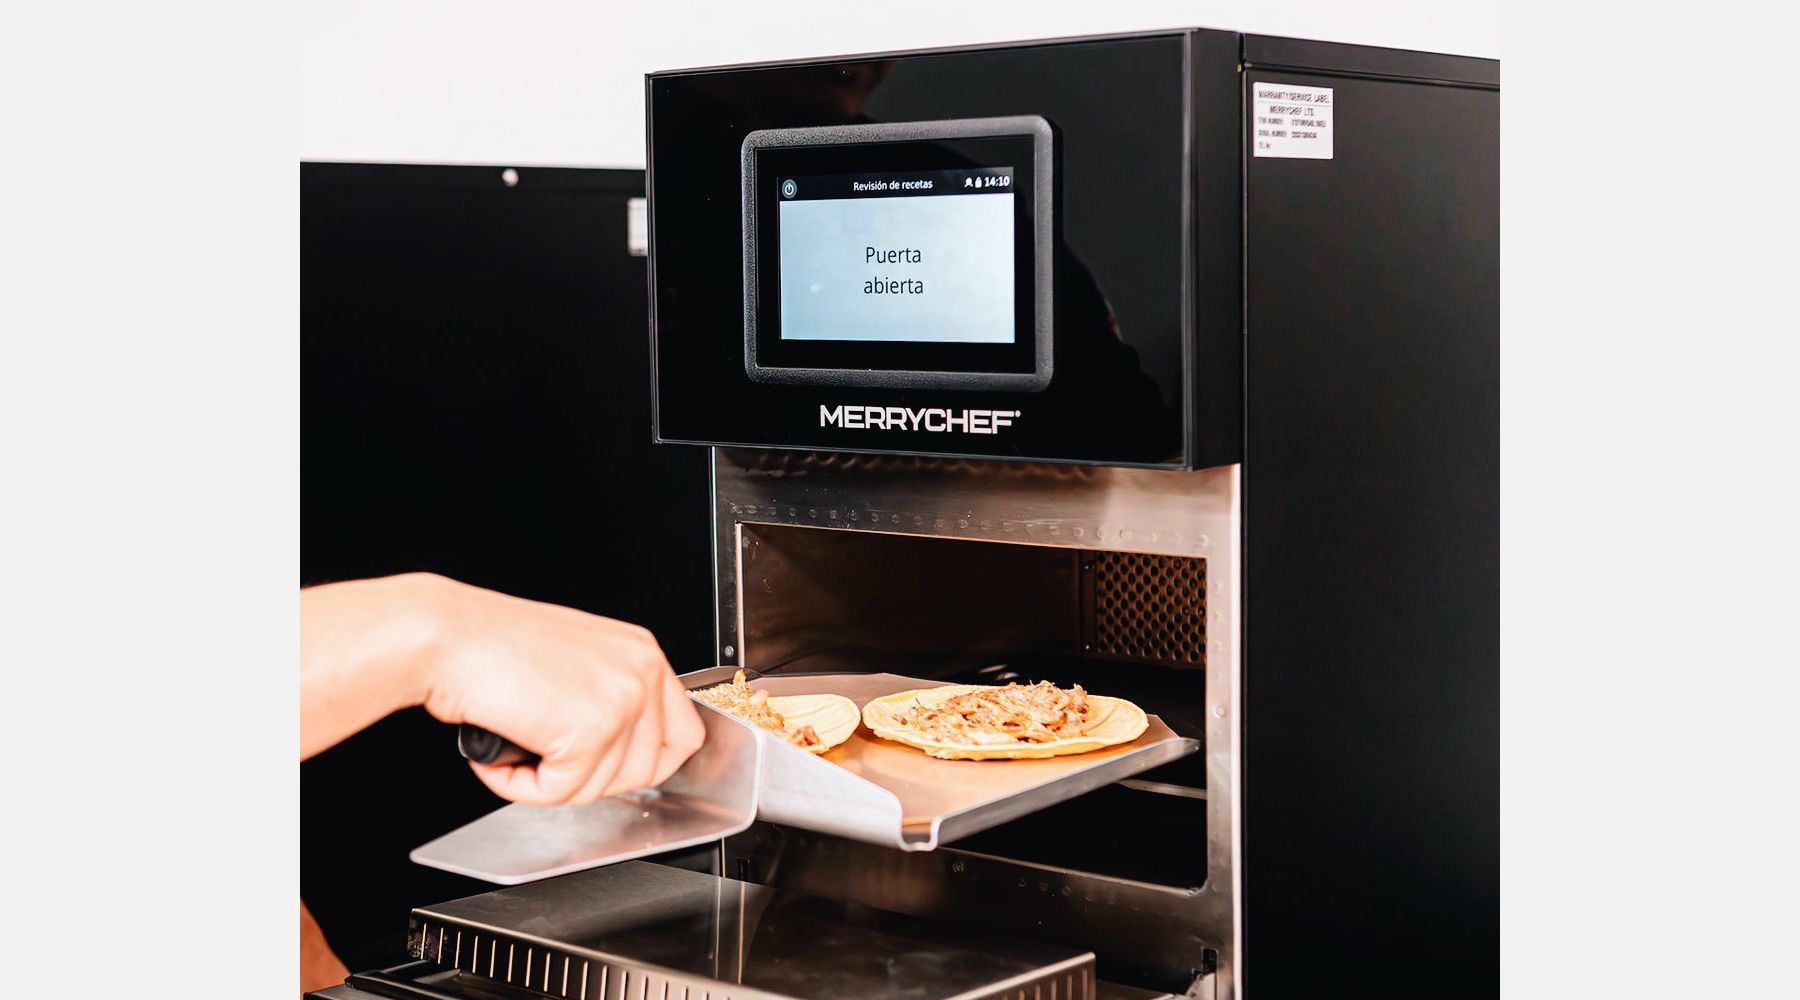 Welbilt mostrará sus innovaciones en equipamiento de cocina en el Gastronòmic Fòrum Barcelona